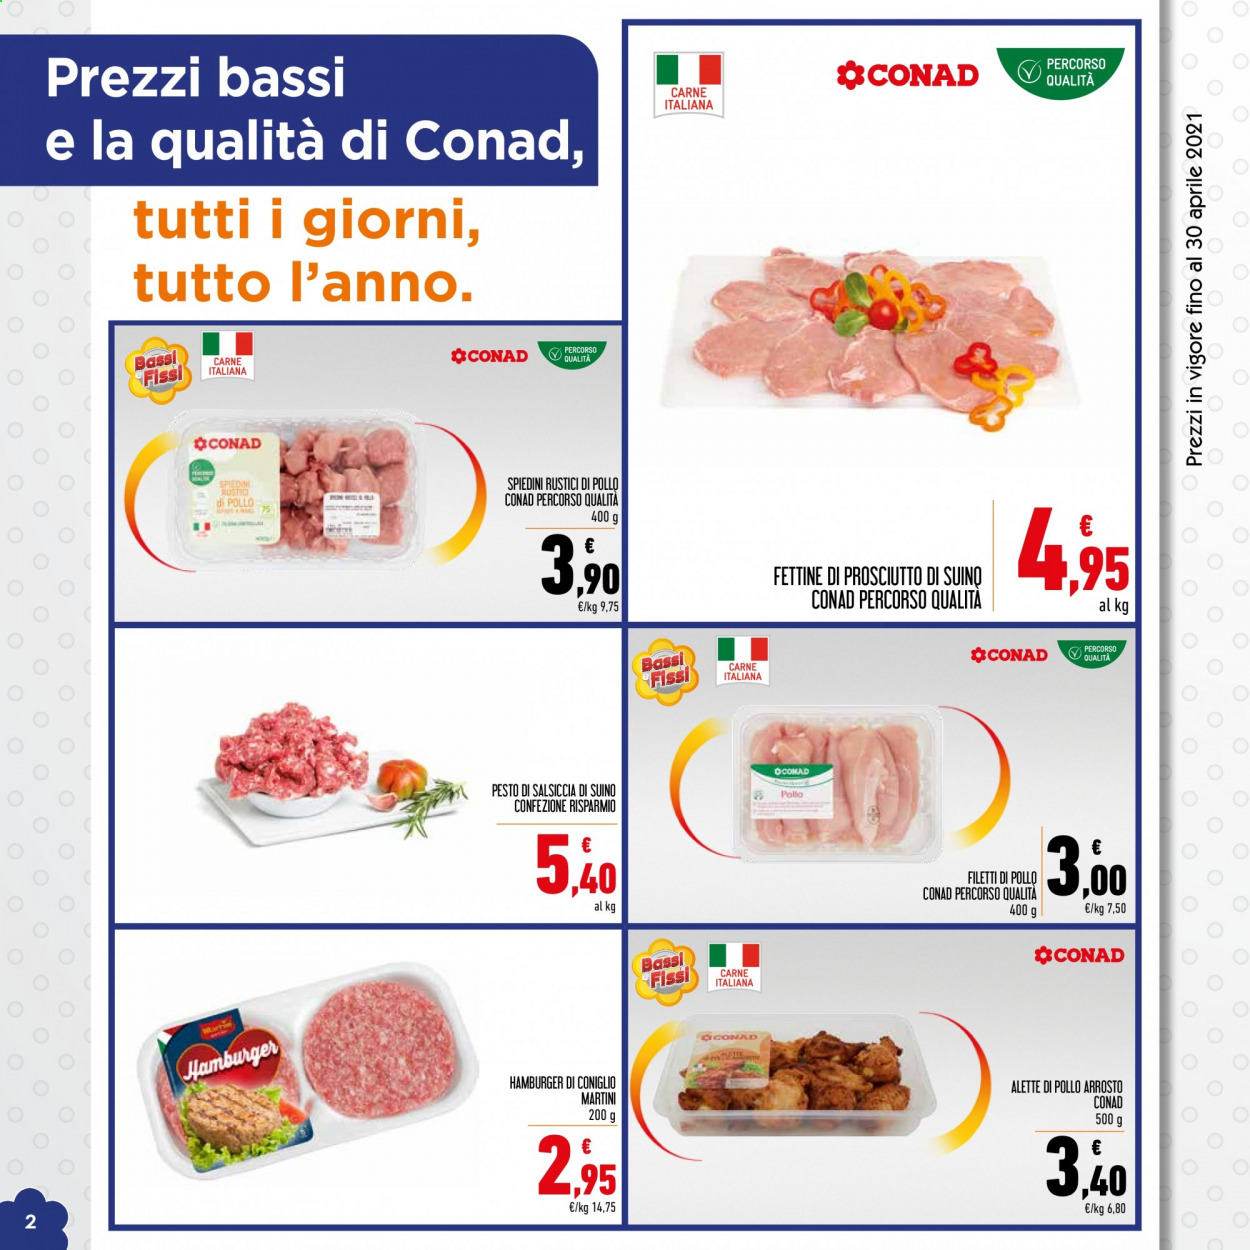 thumbnail - Volantino Conad - 1/4/2021 - 30/4/2021 - Prodotti in offerta - alette di pollo, Martini, hamburger, hamburger di coniglio, suino, spiedini, pollo arrosto, pesto. Pagina 2.